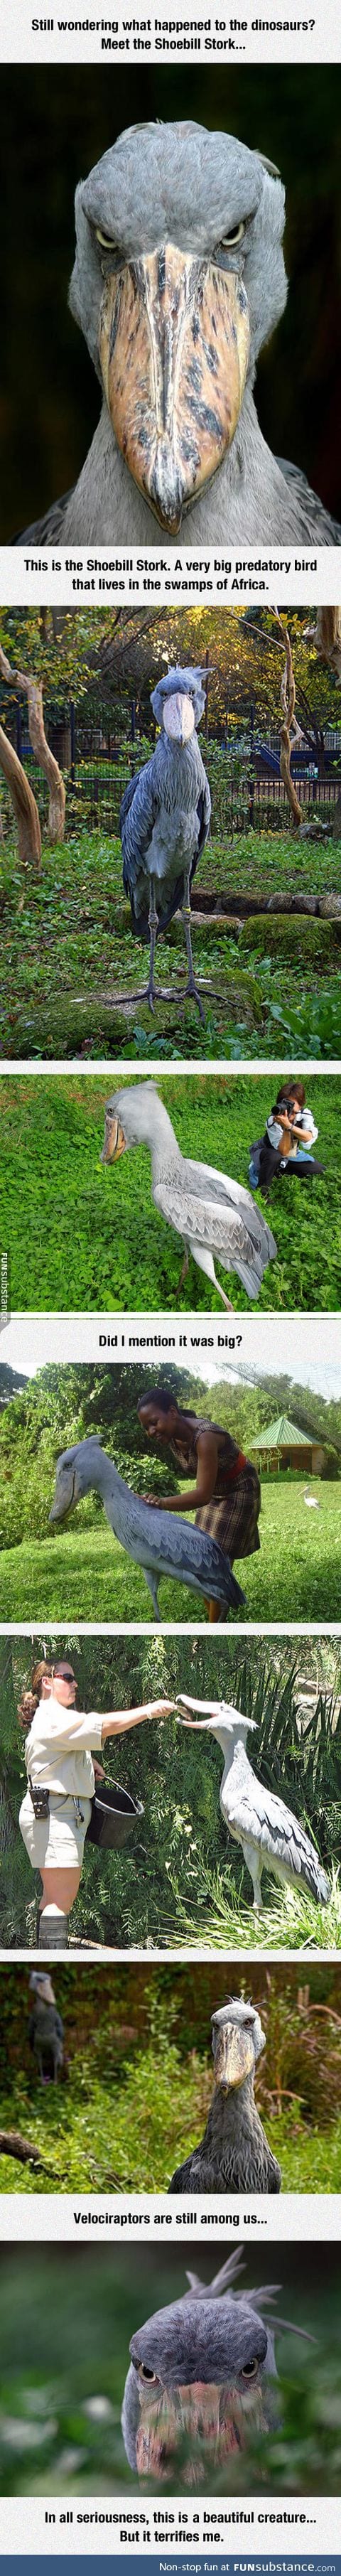 Meet the shoebill stork